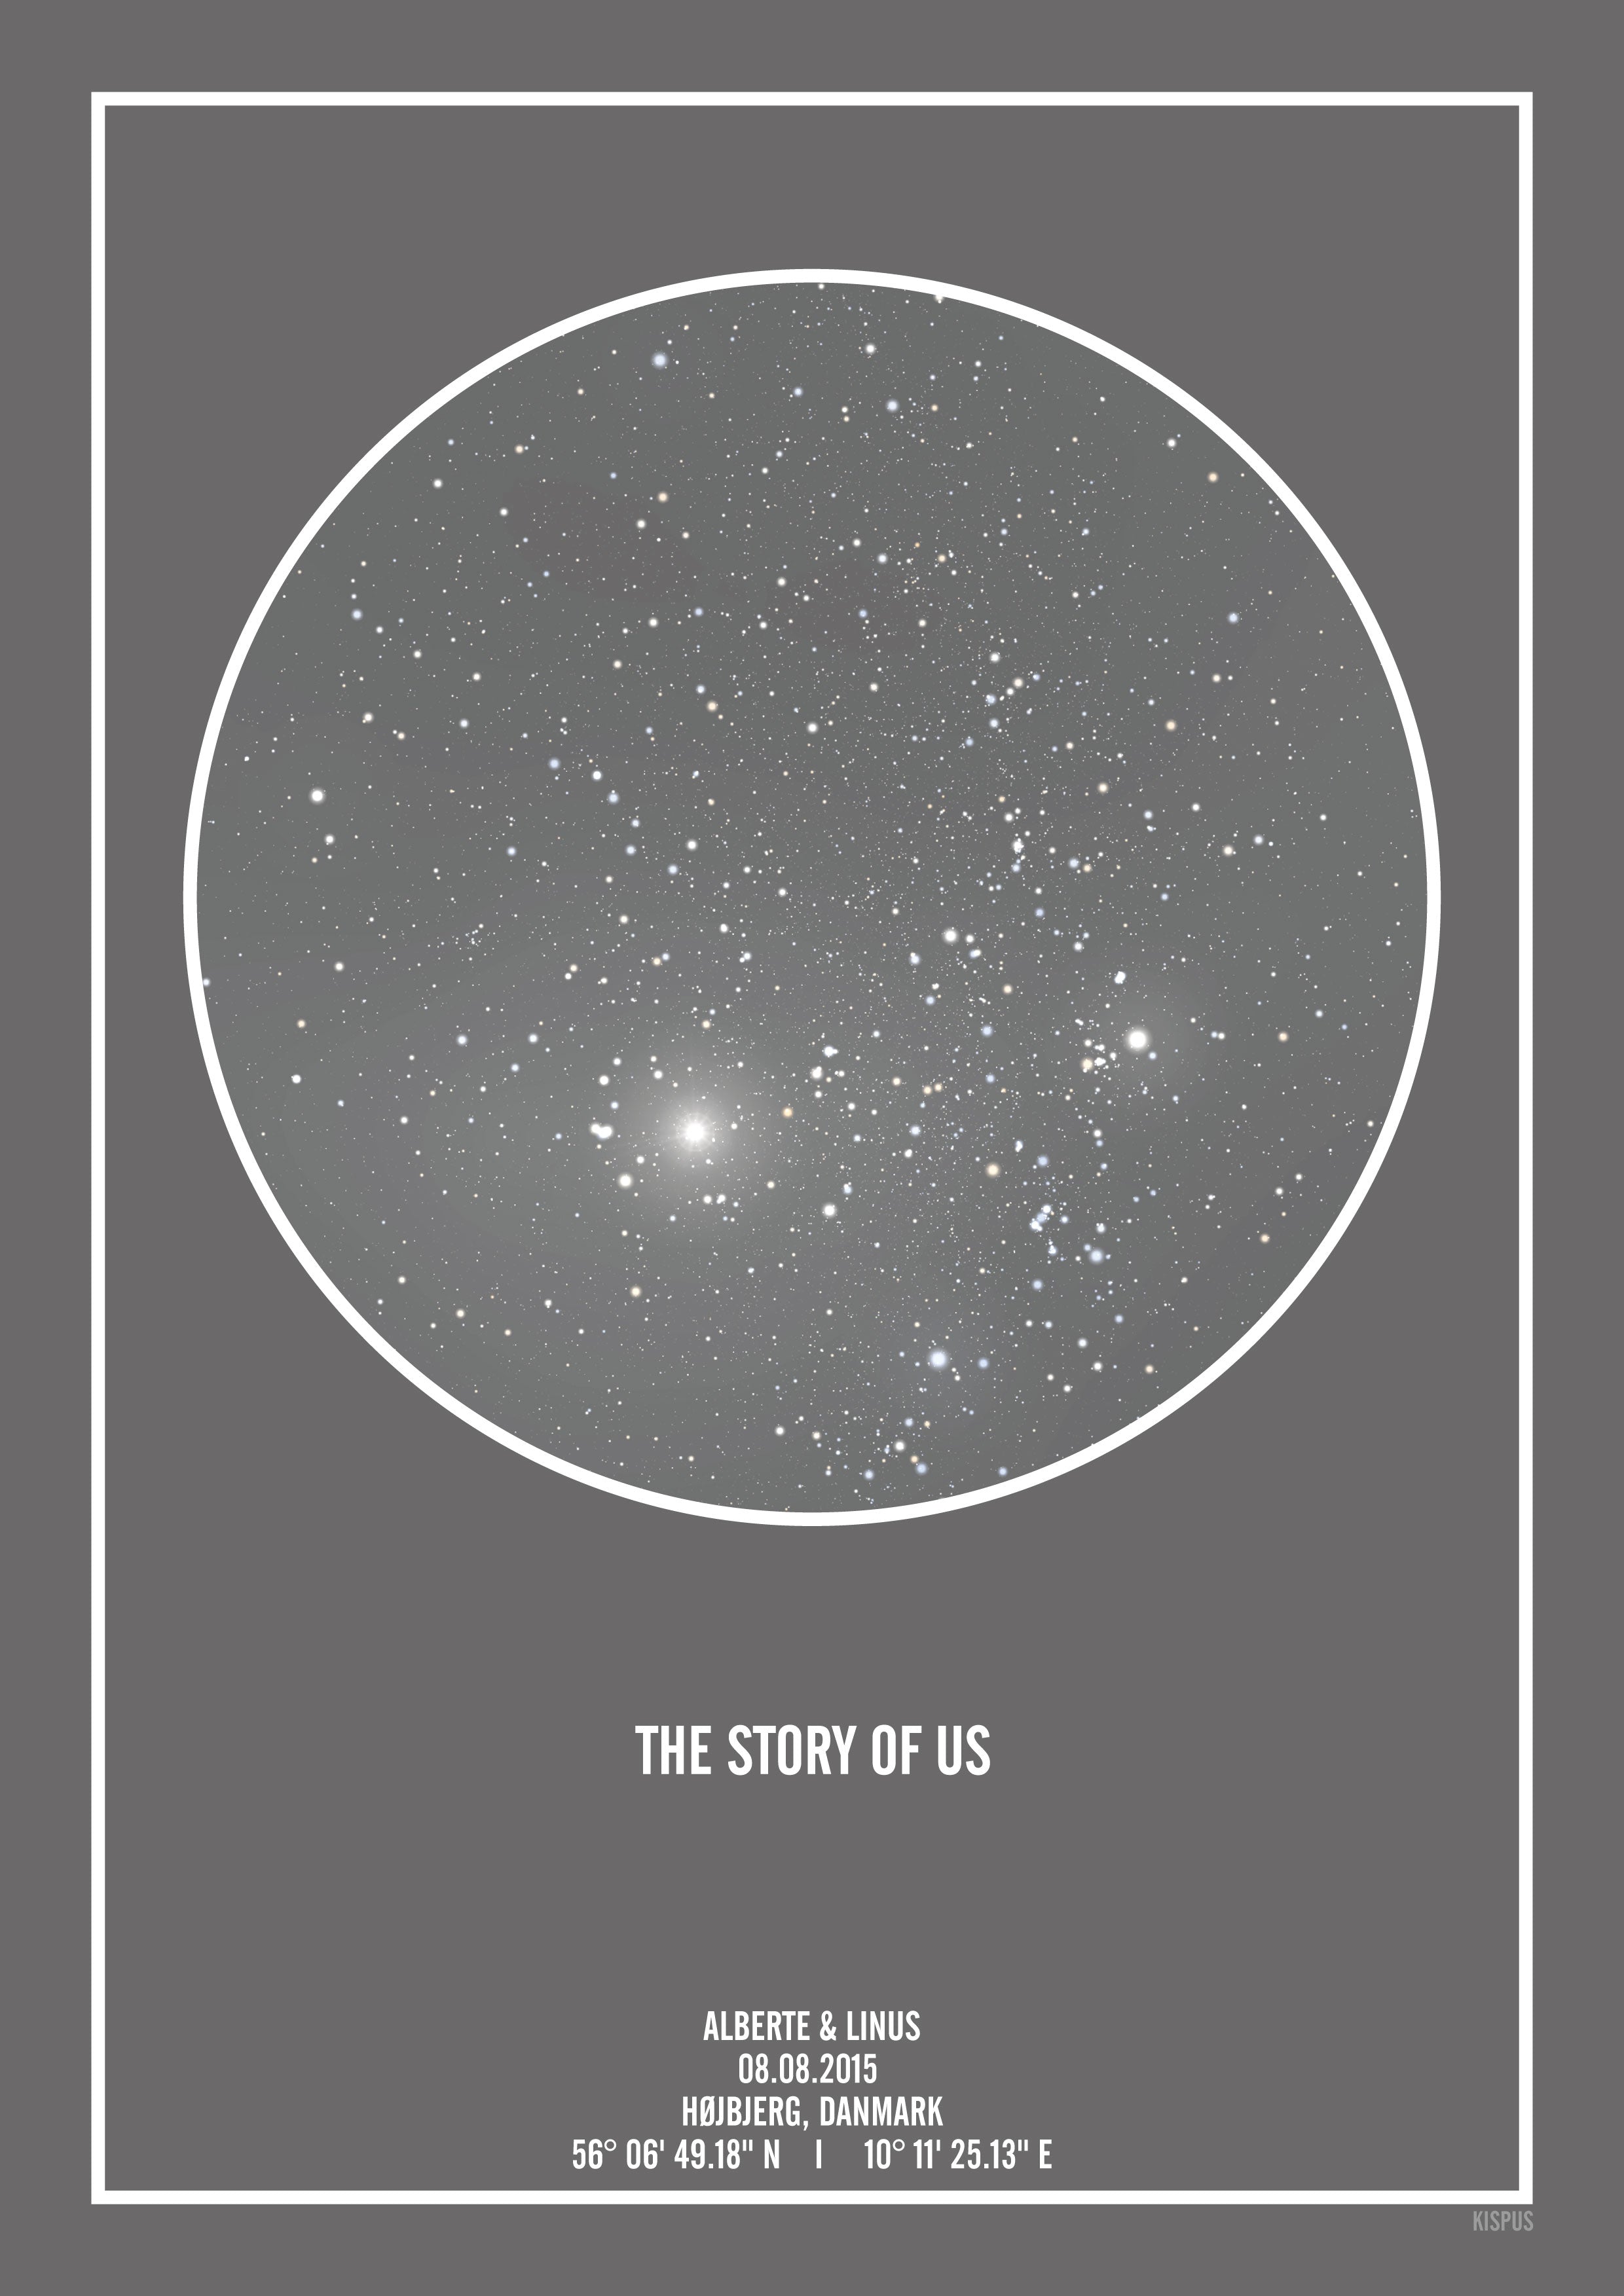 Se PERSONLIG STJERNEHIMMEL PLAKAT (MØRKEGRÅ) - 50x70 / Hvid tekst + grå stjernehimmel / Klar stjernehimmel hos KISPUS